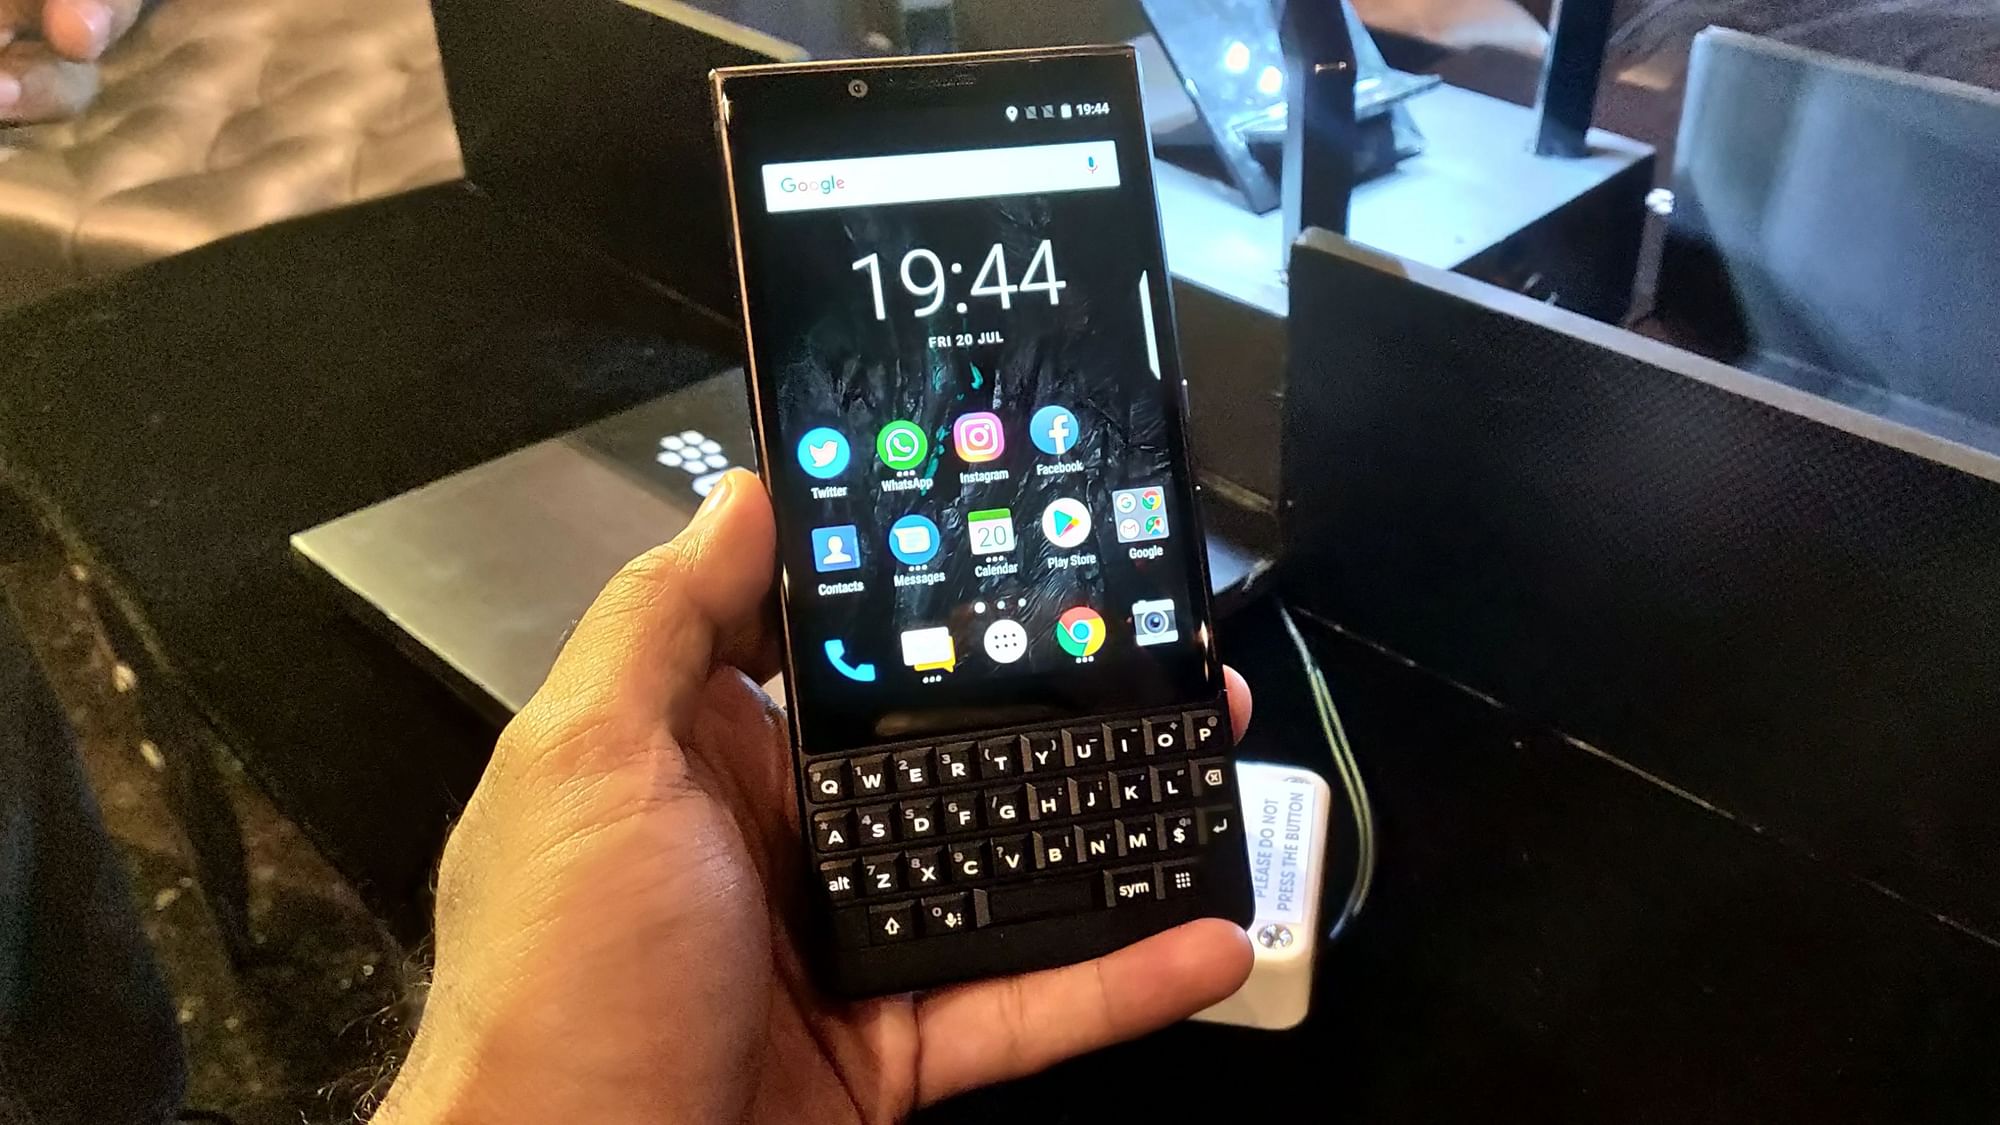 one mobile market blackberry